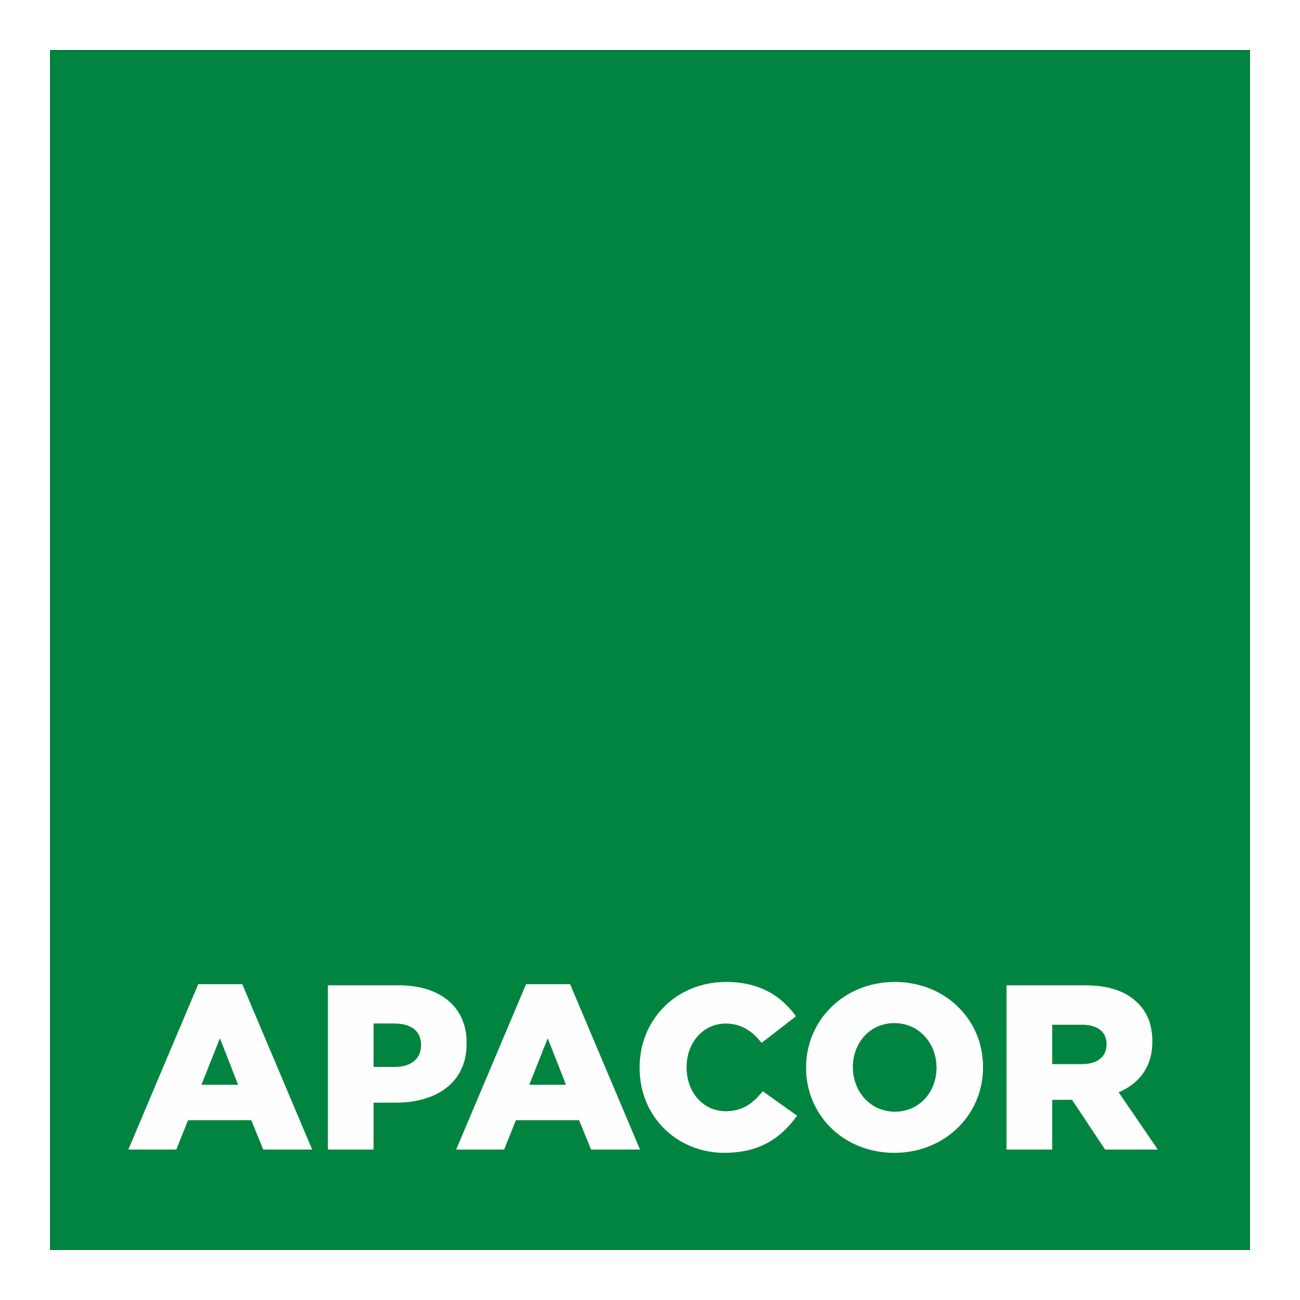 Apacor Ltd.